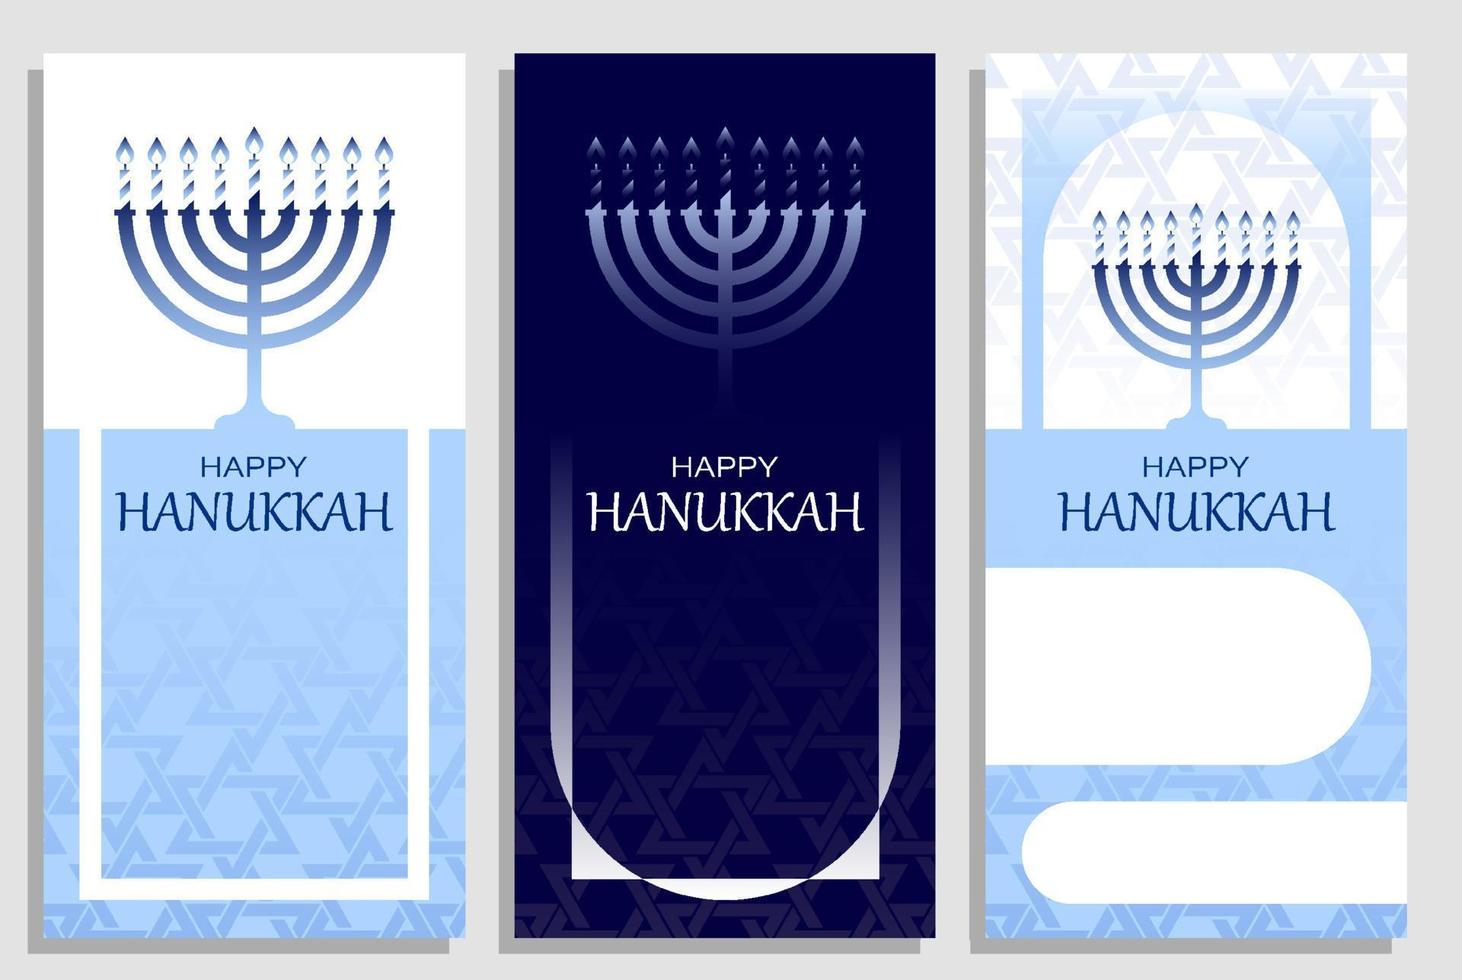 Chanukka-Einladungen mit Menora-Kerze. fröhlicher jüdischer feiertag von chanukka. satz von vorlagen für grußkarten, banner, broschüren. Vektor